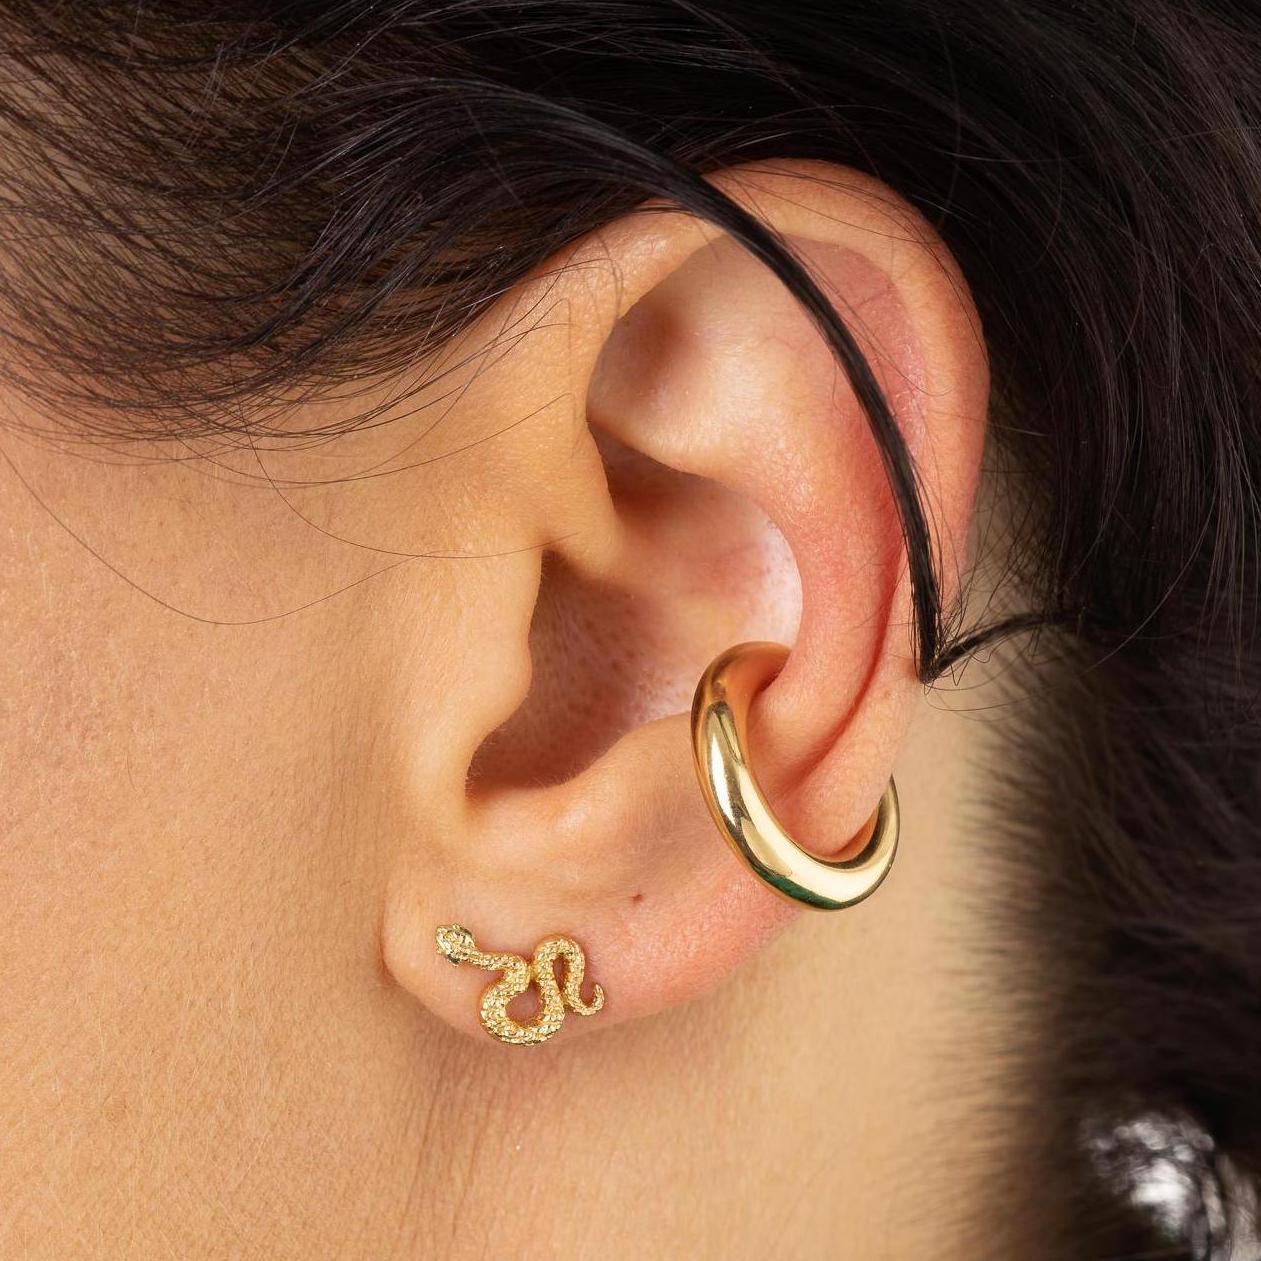 EAR-GPL Snake Stud Earrings with Green Eyes